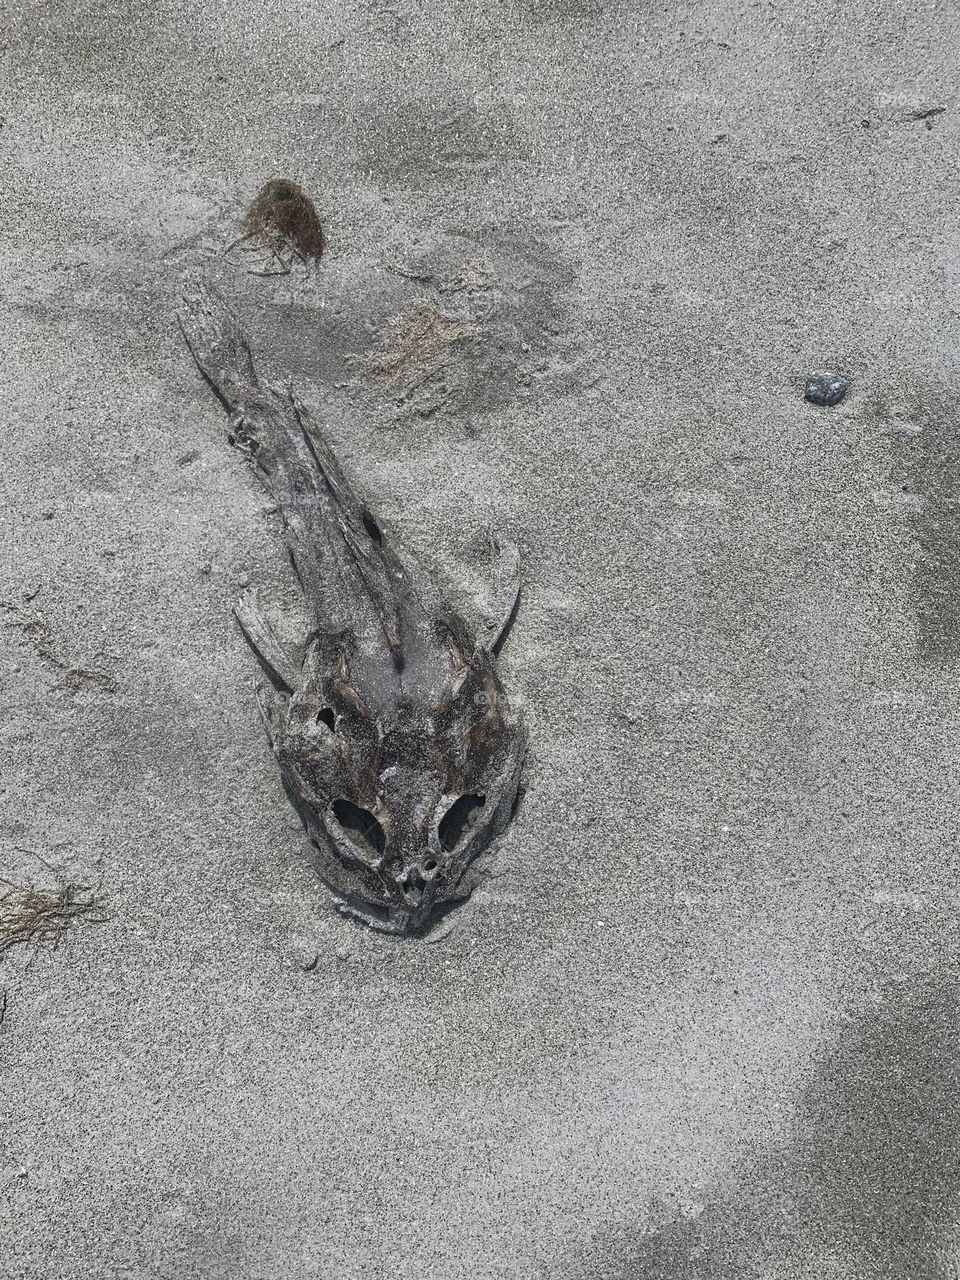 Carcass on the Hawk Beach 